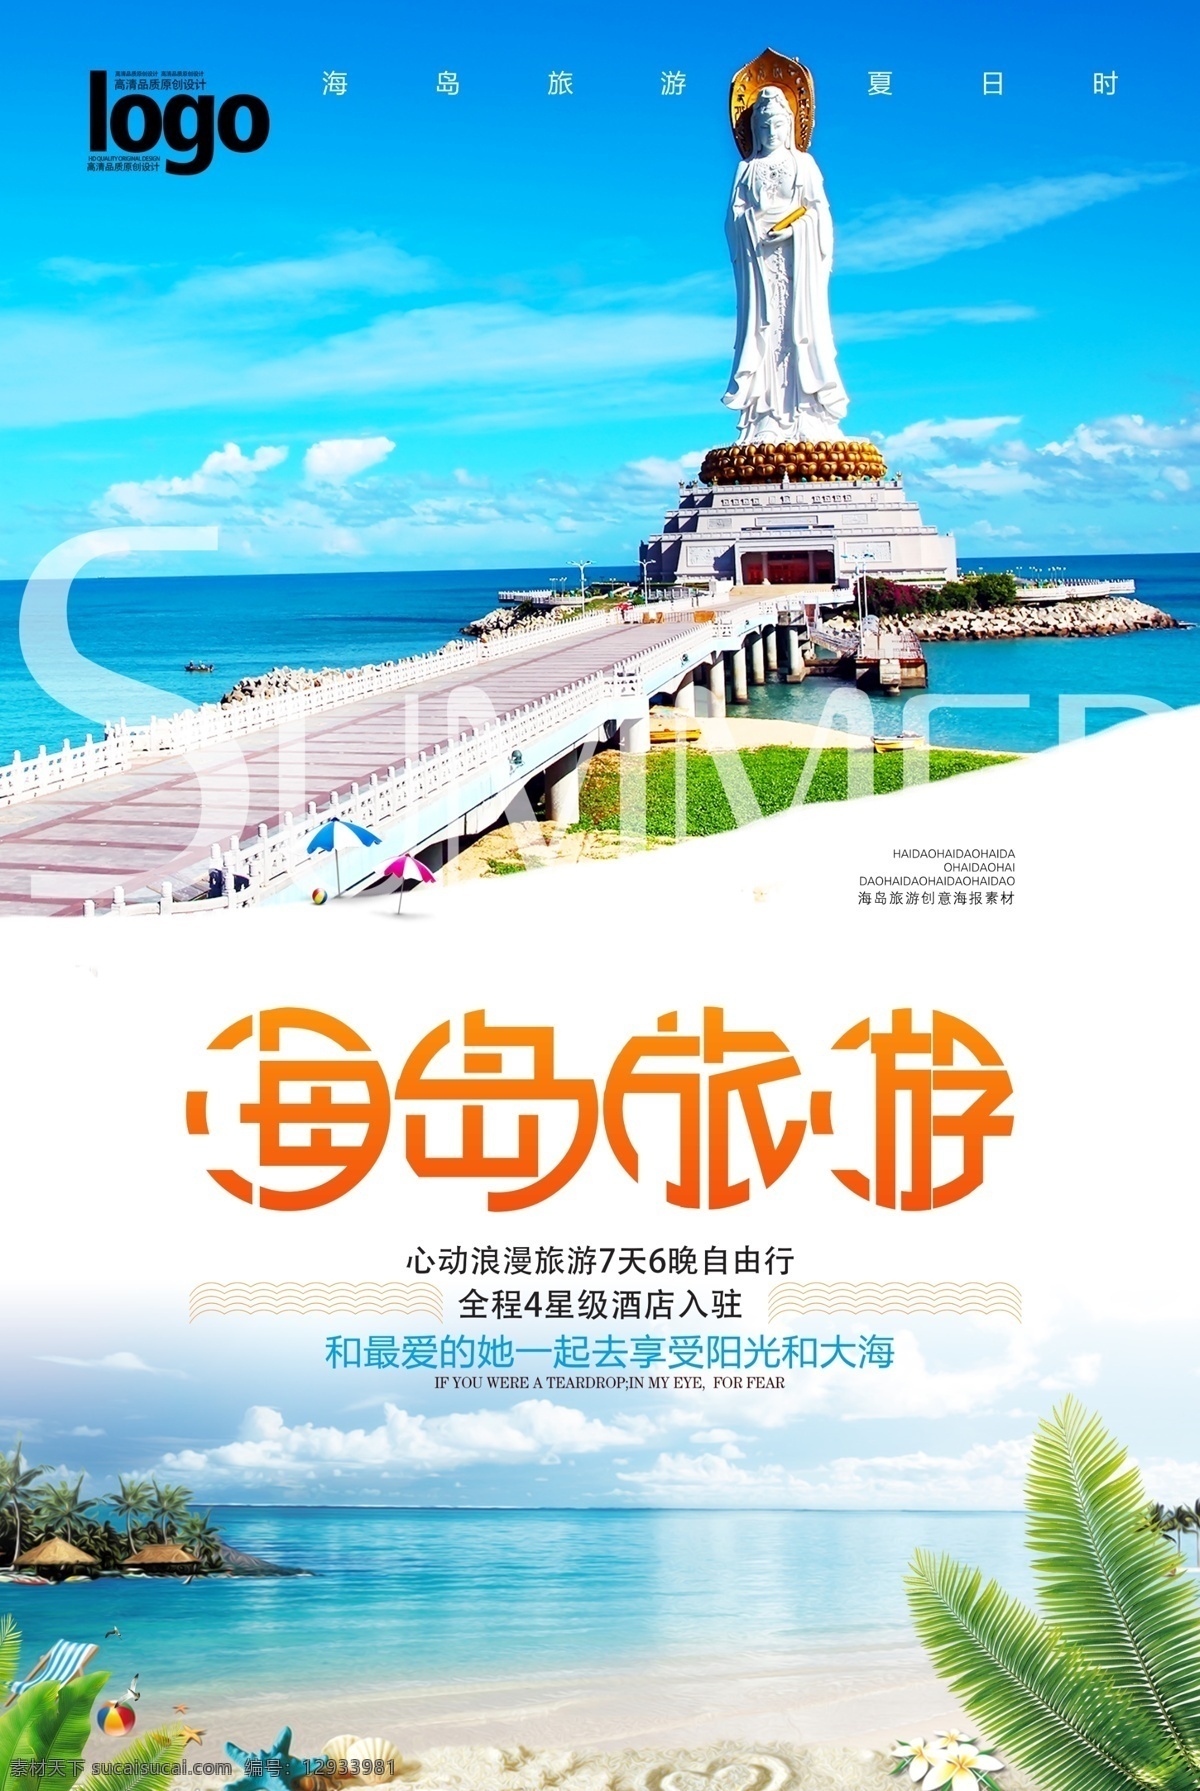 小 清新 海岛 旅游 海报 旅游海报 海边 浪漫 宣传 促销 国内 旅行社 说走就走 免费模版